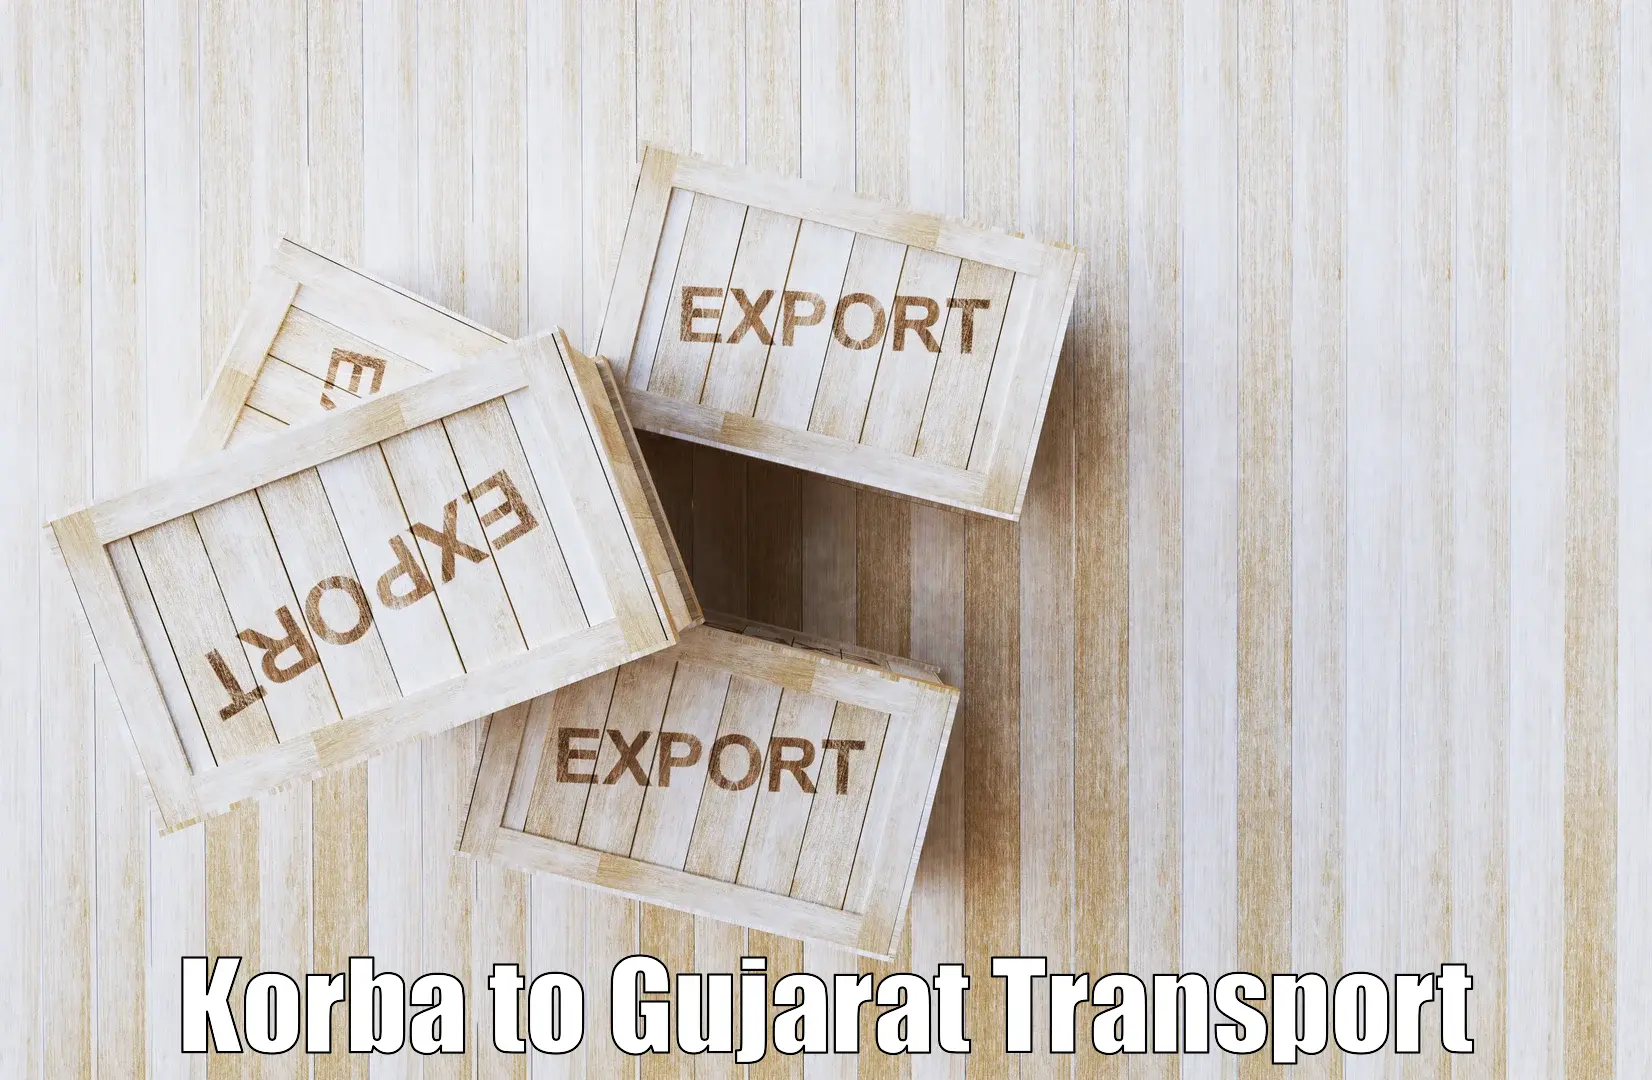 Interstate goods transport Korba to Idar